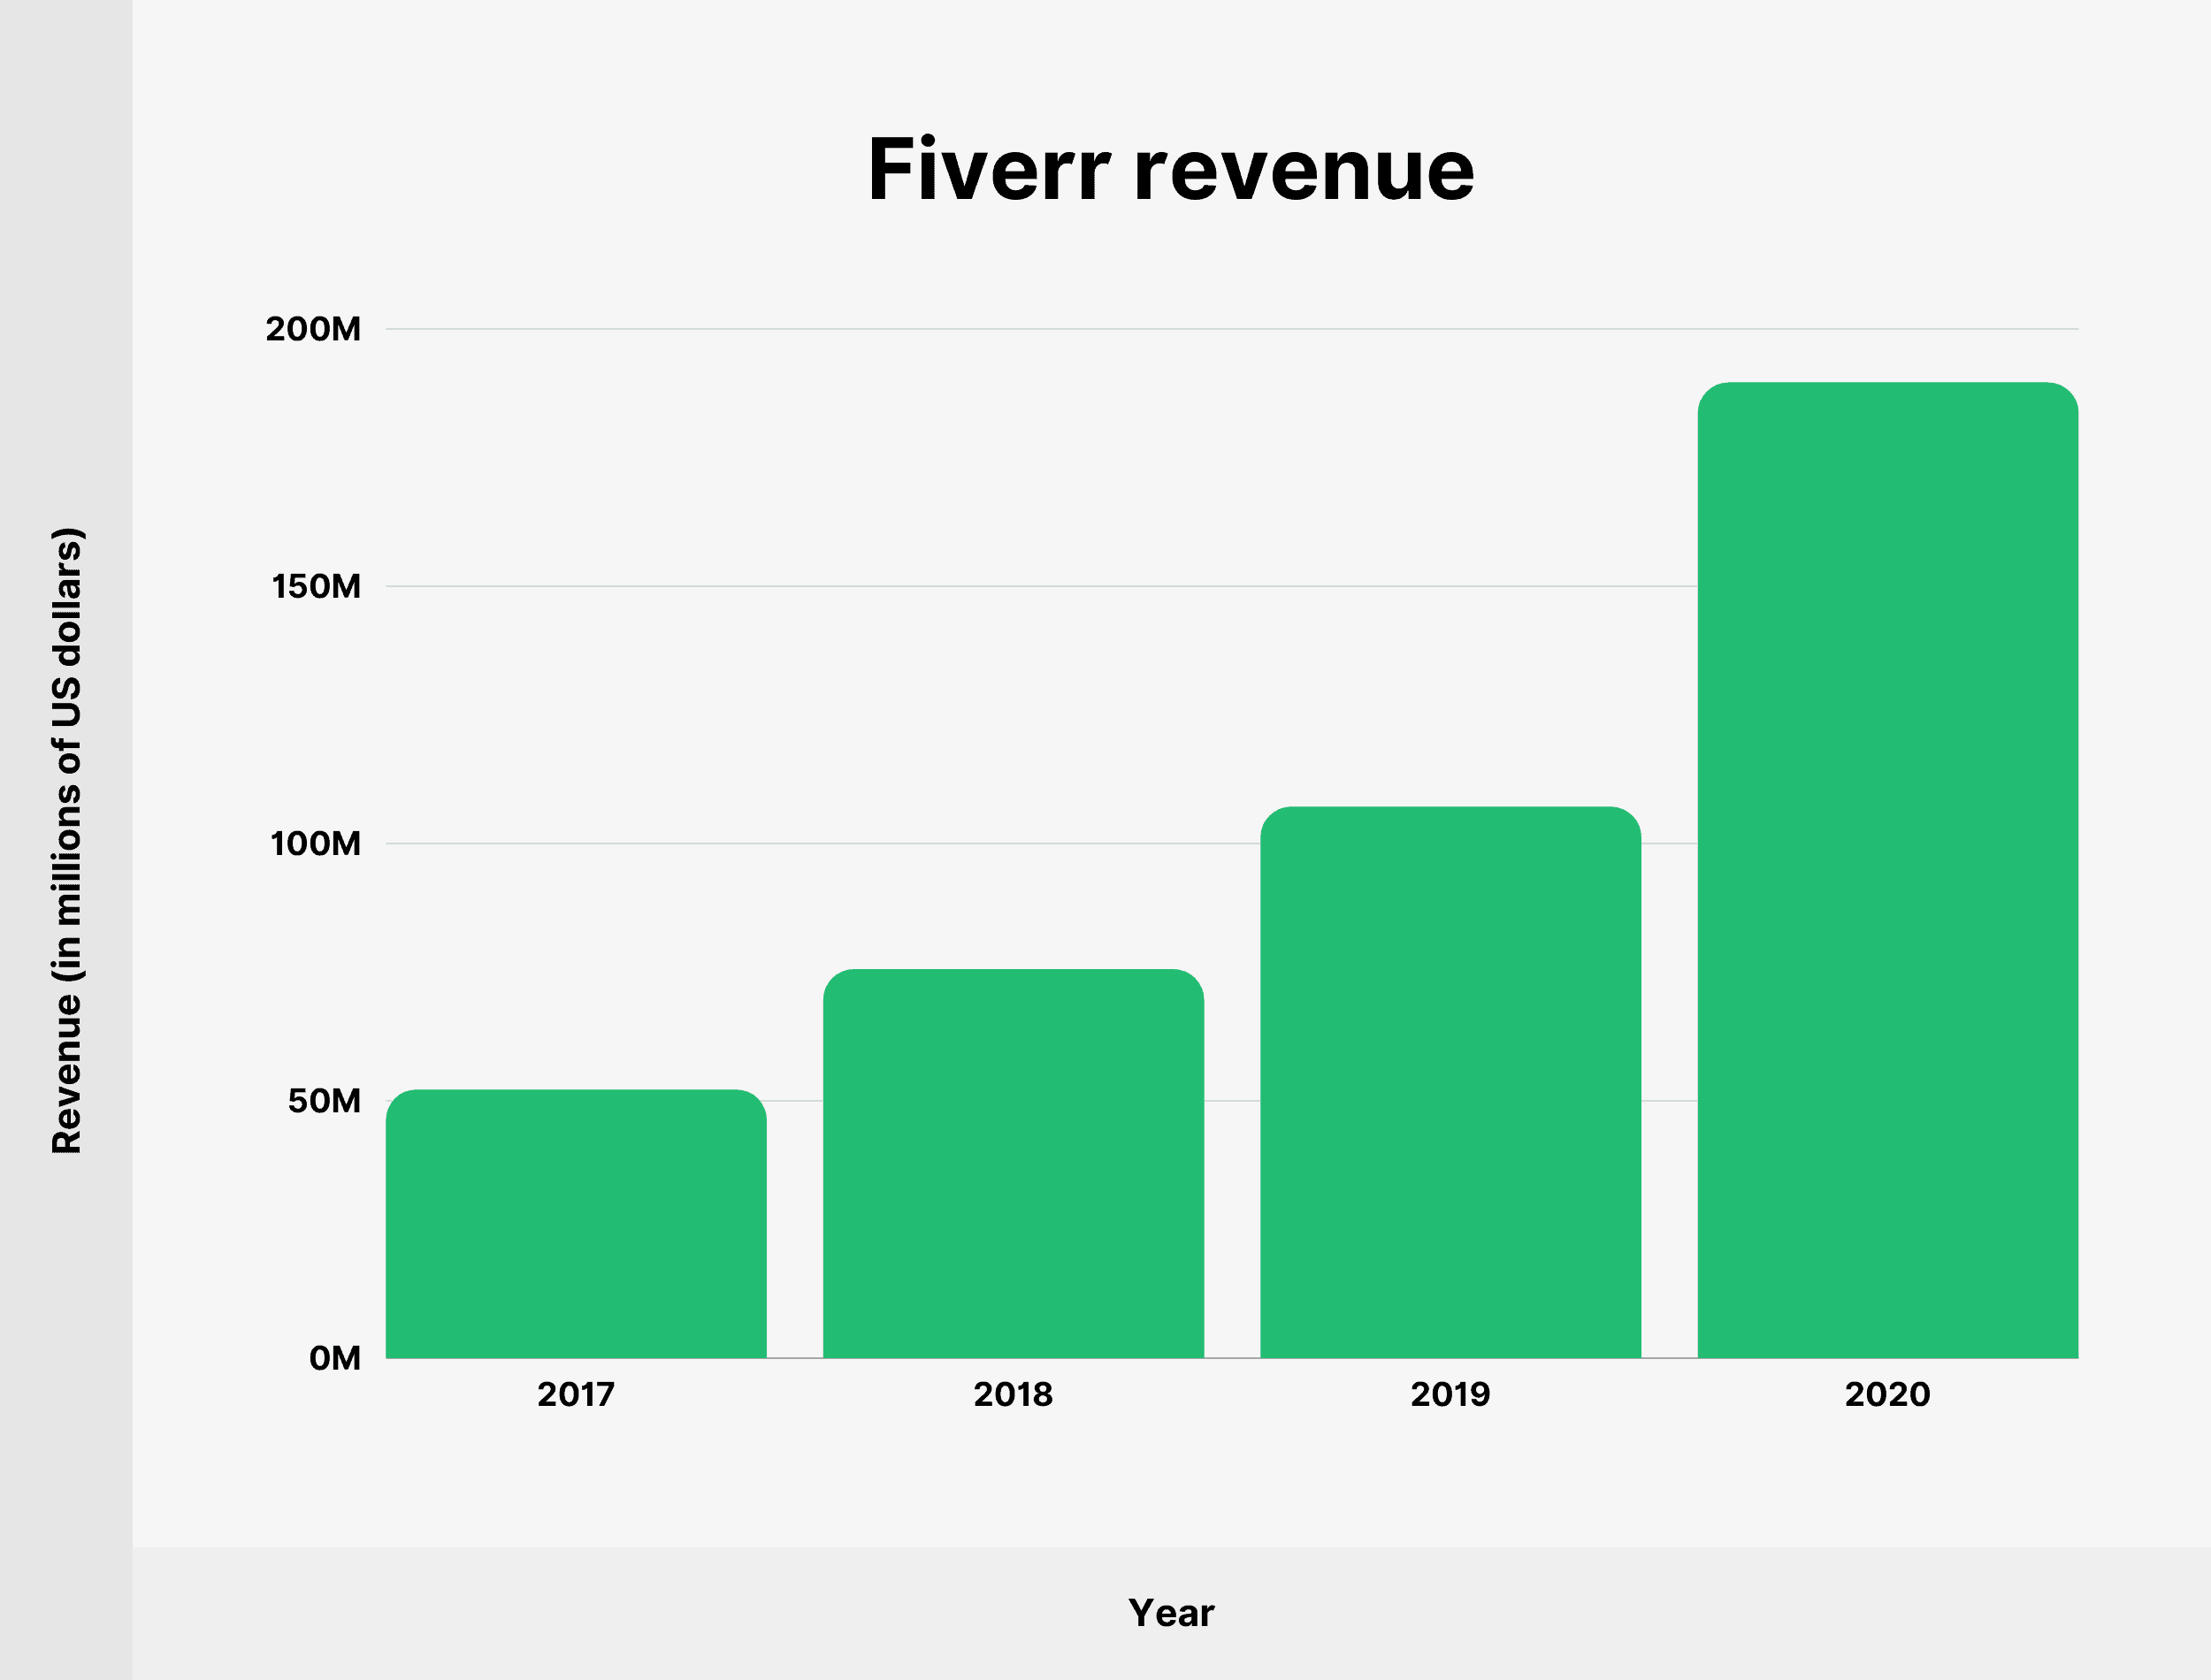 Fiverr revenue